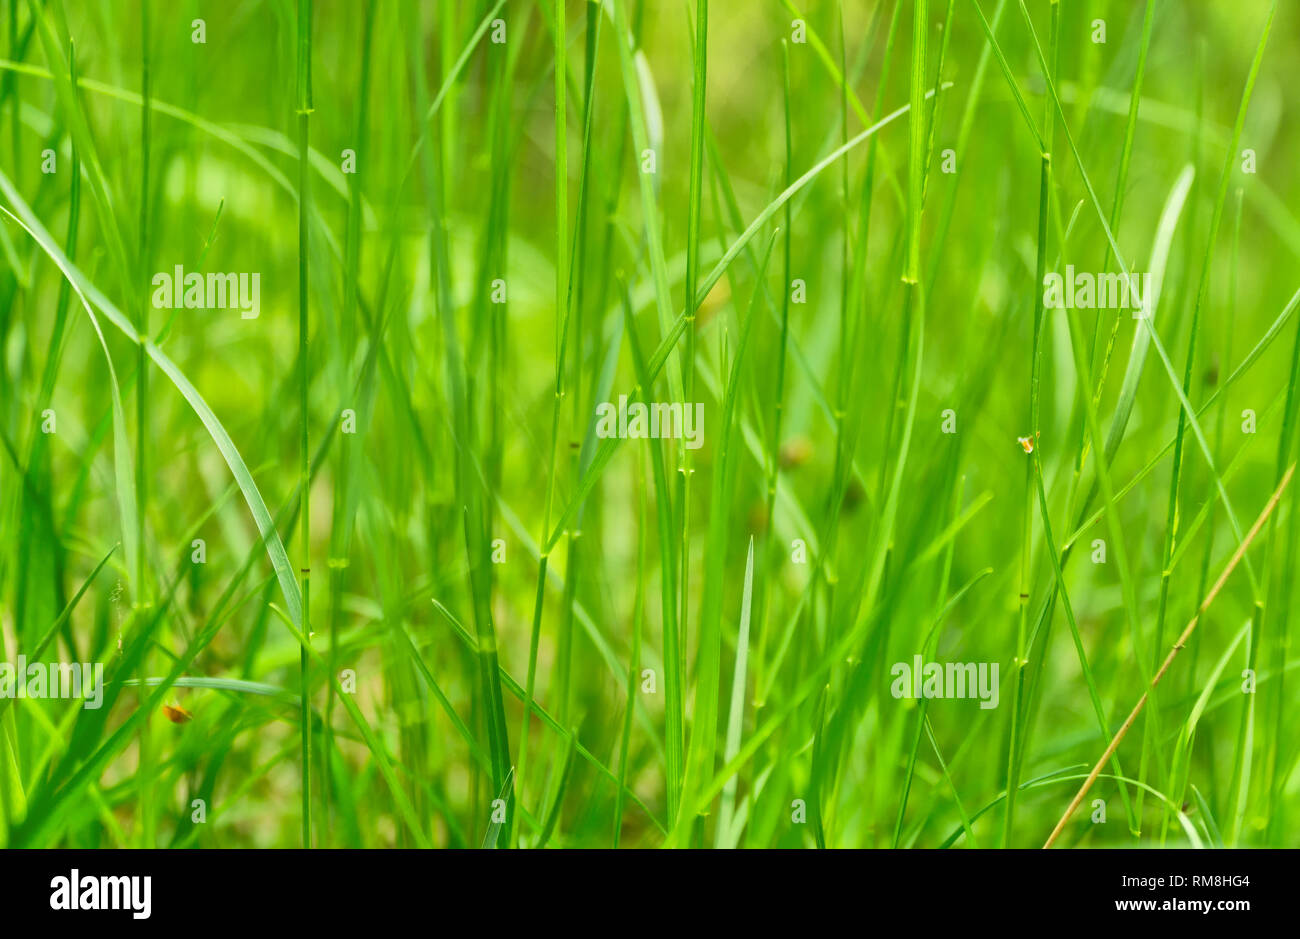 Kunst abstrakt grün frühling Hintergrund oder natürlichen Hintergrund mit frischem Gras. Selektive konzentrieren. Stockfoto